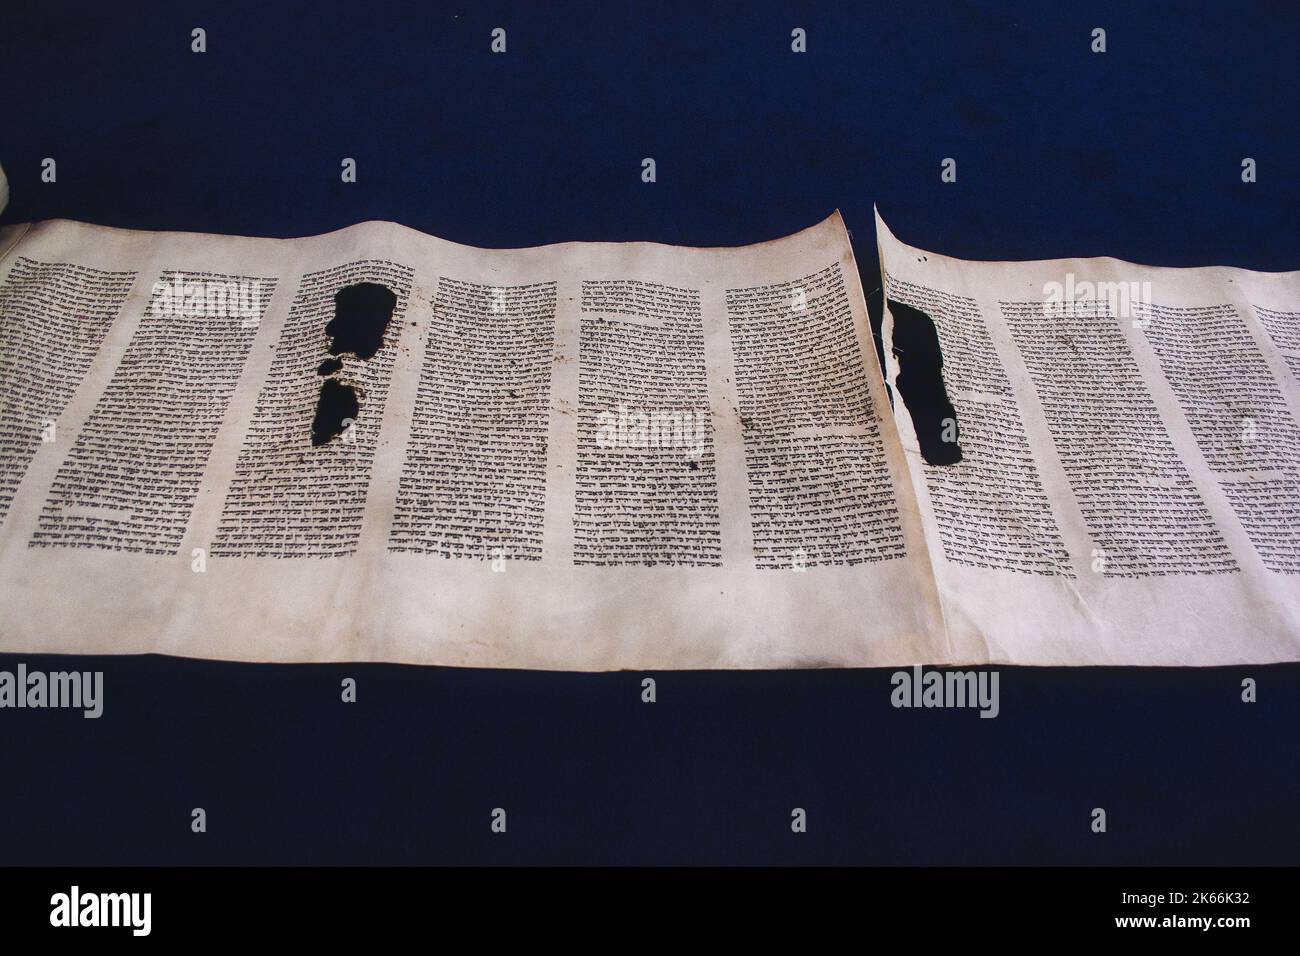 Texte hébreu antique du Livre de la Genèse dans le défilement de la Torah. Le chapitre de la Torah a lu chaque Sabbat dans une synagogue. Conversion Judaïsme Banque D'Images